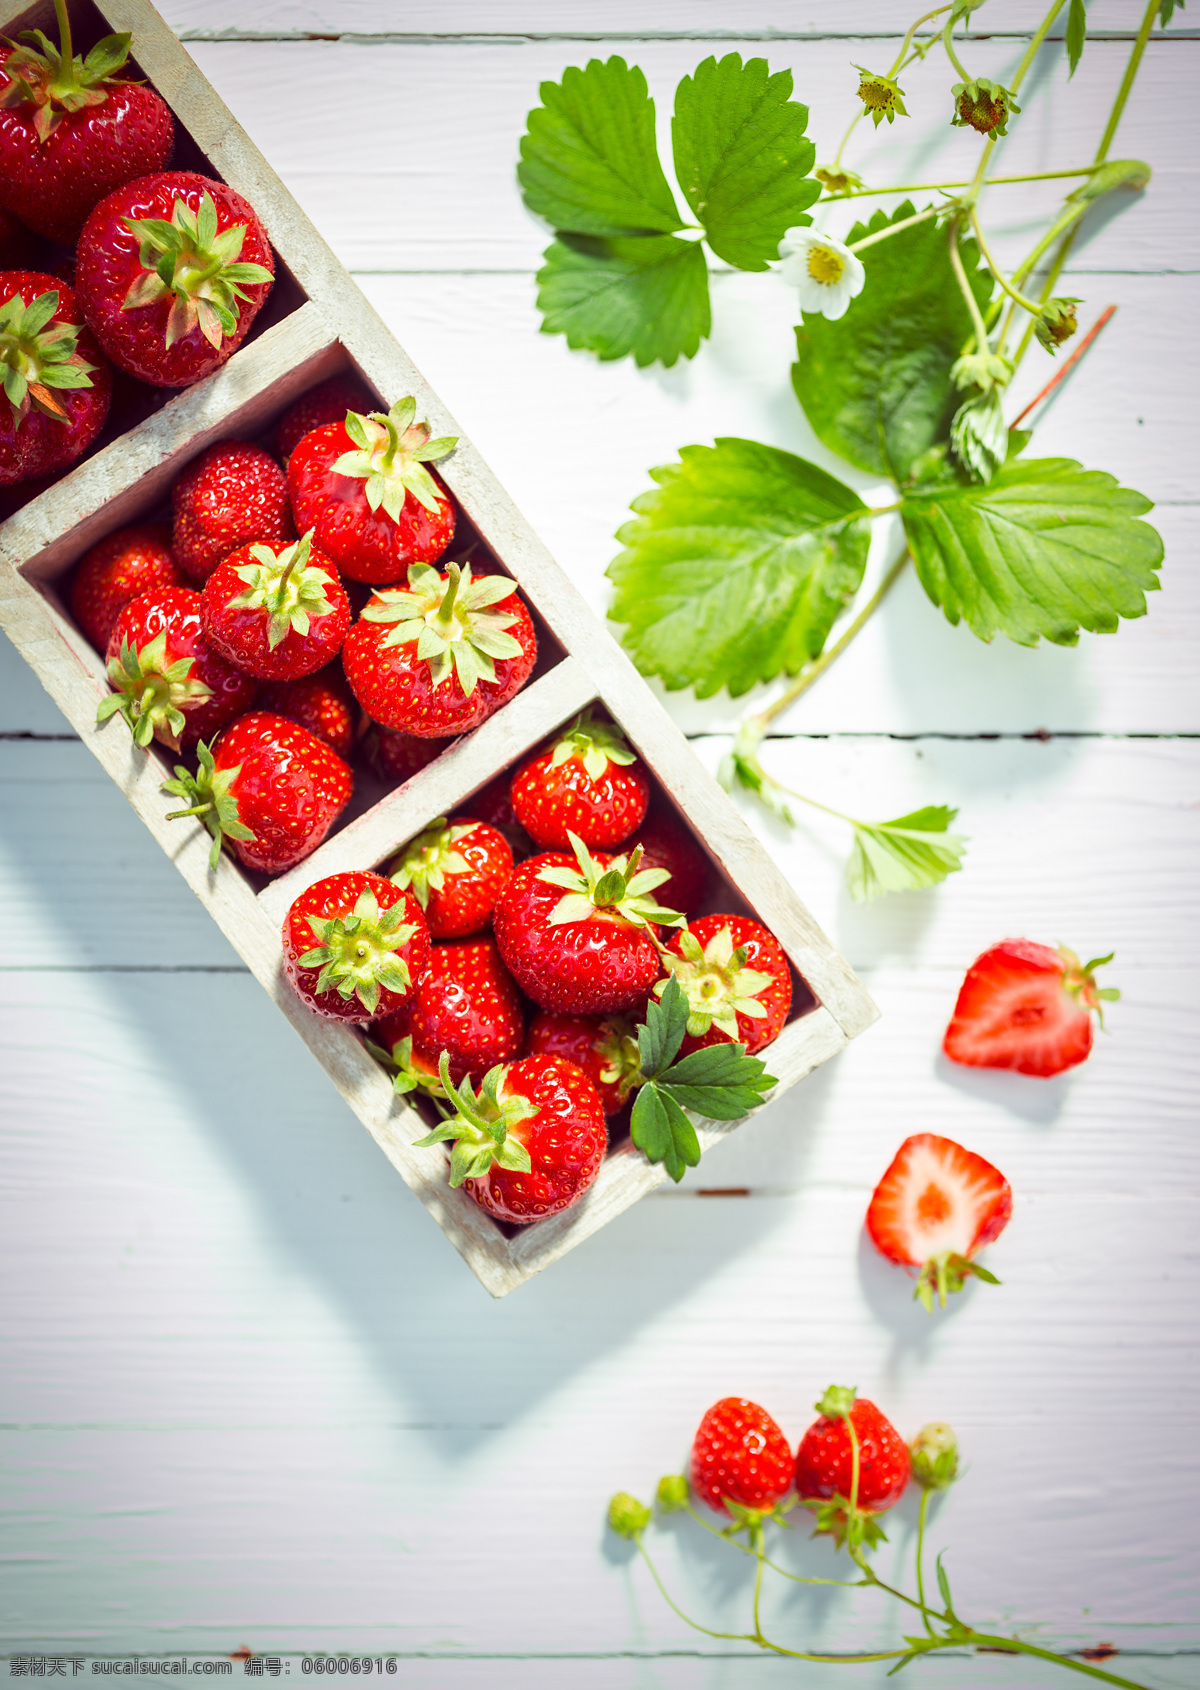 新鲜草莓摄影 草莓 新鲜水果 美味水果 果实 水果摄影 水果蔬菜 餐饮美食 白色